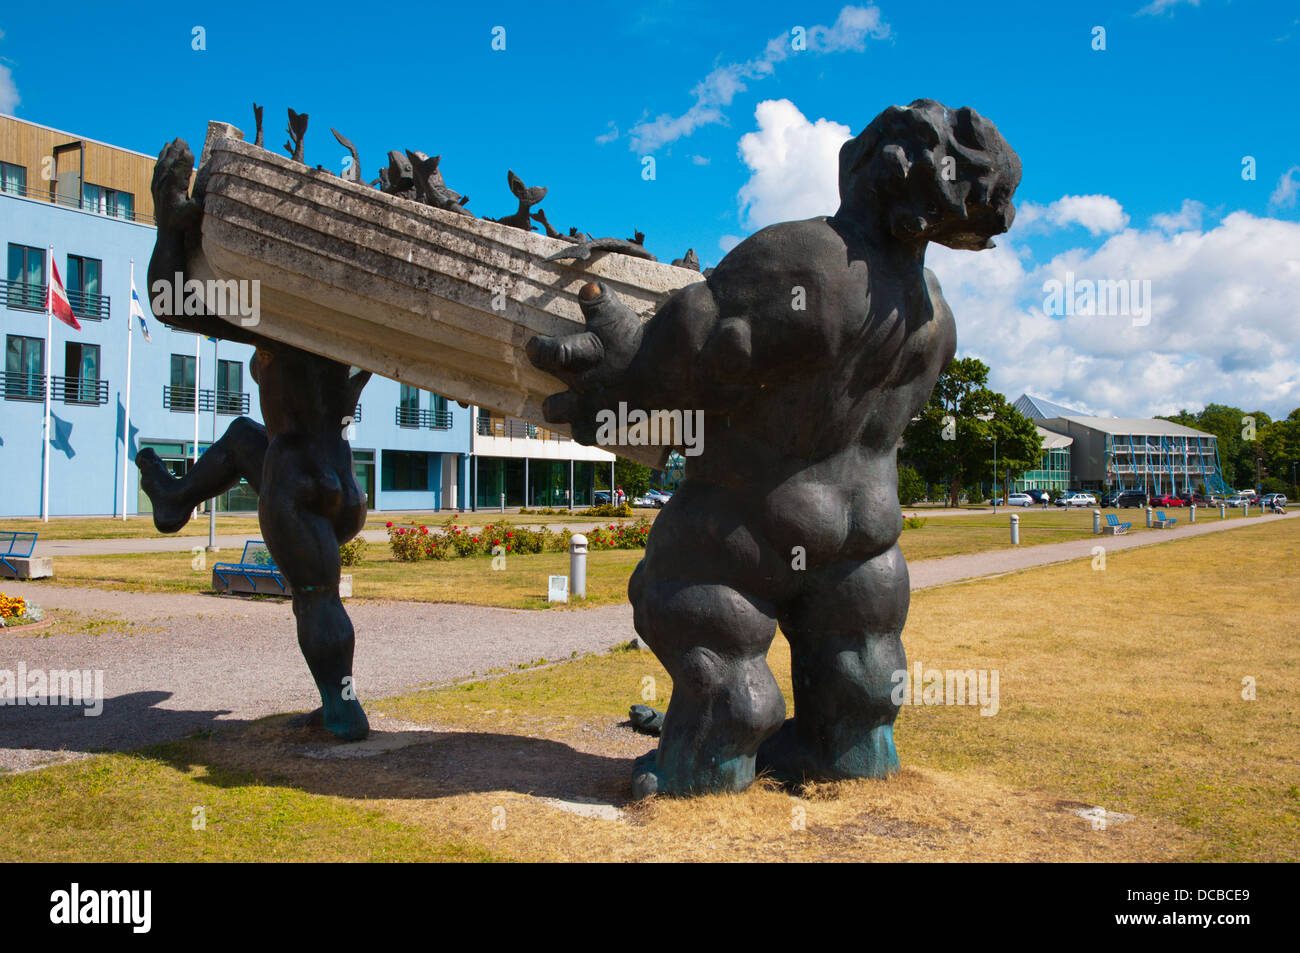 Suur Toll ja Piret sculpture by Tauno Kangro in harbour Kuressaare town Saaremaa island Estonia northern Europe Stock Photo